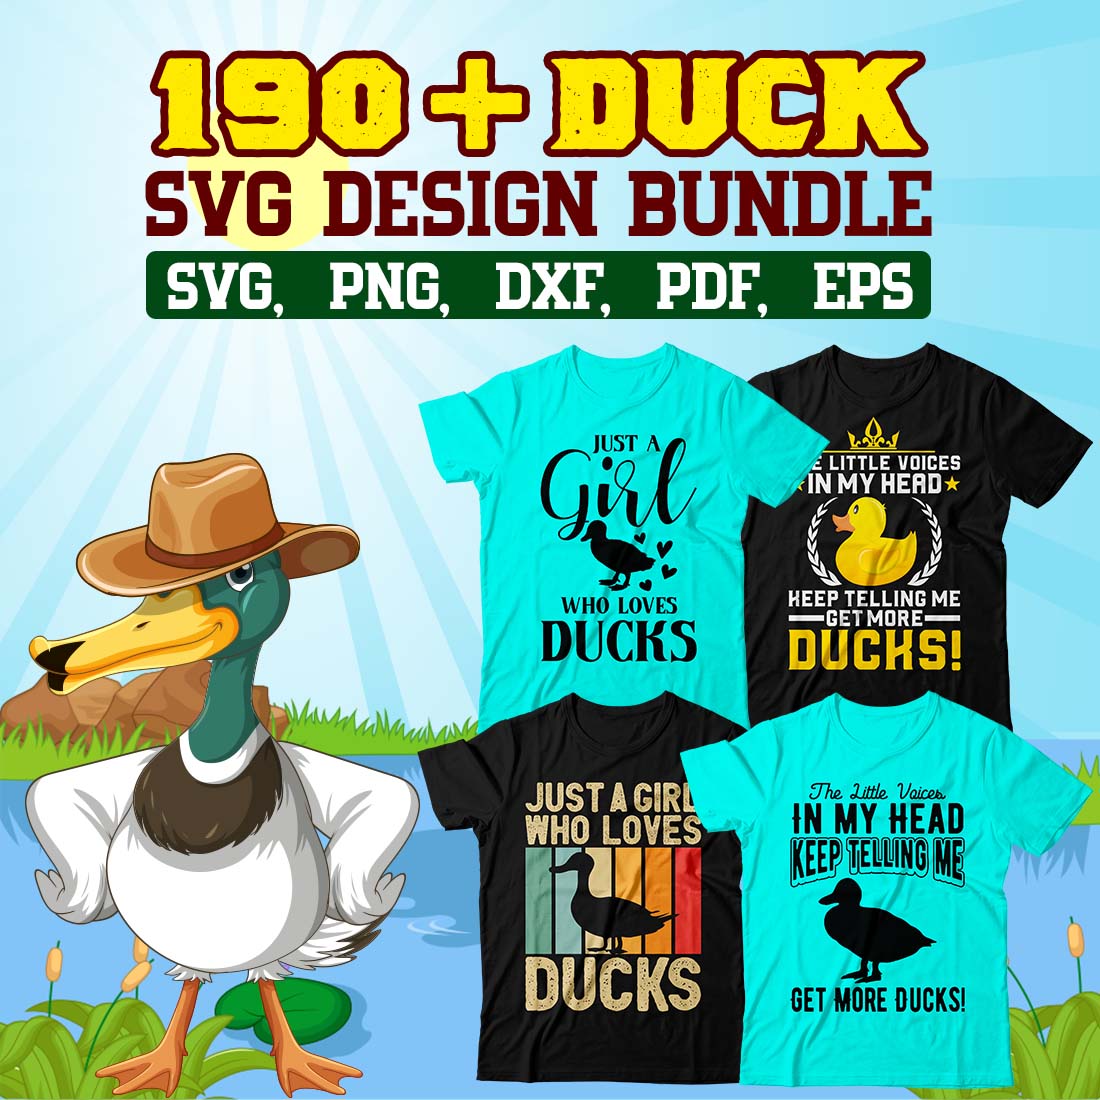 Duck SVG Design Bundle cover image.